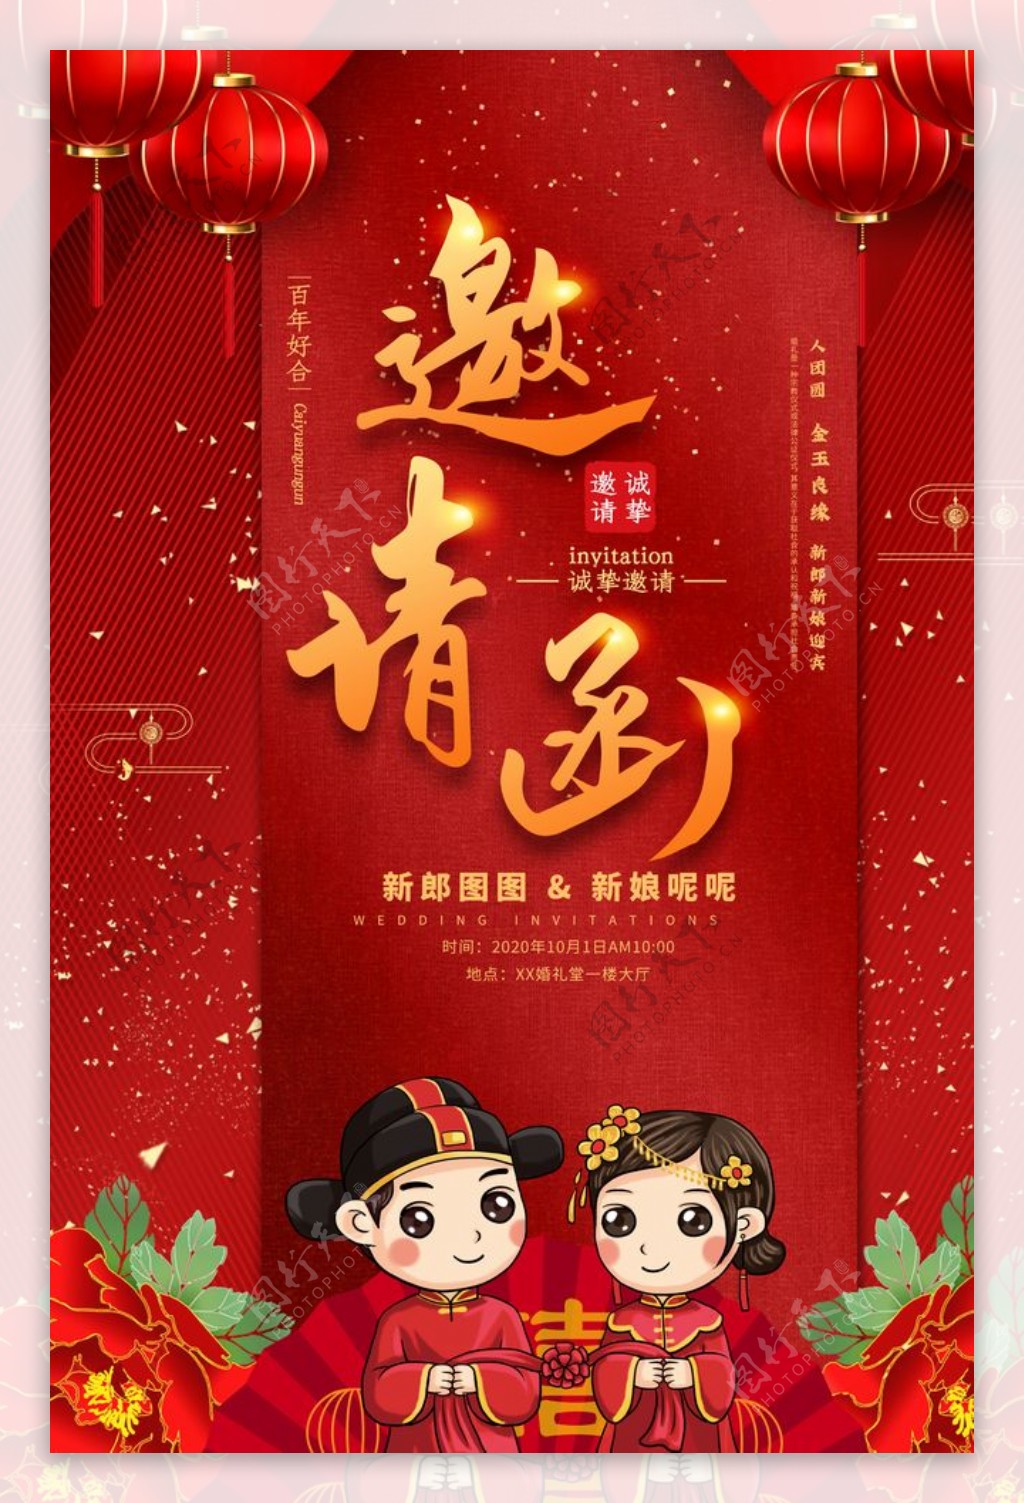 中式红色喜庆结婚海报